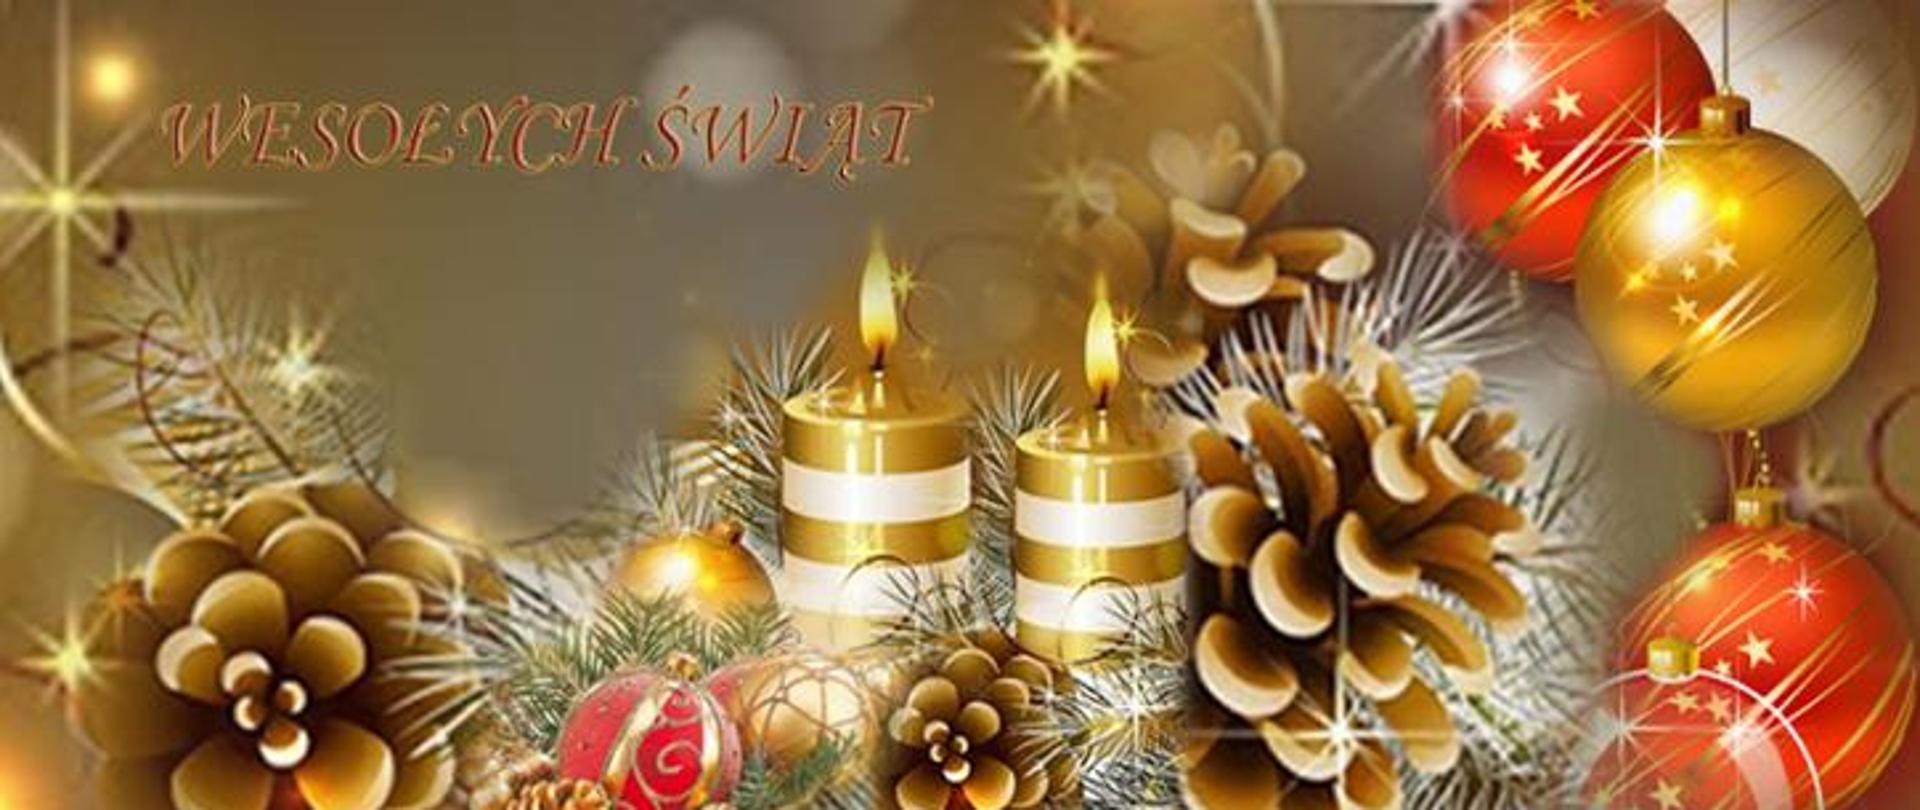 Napis Wesołych świąt z elementami świątecznymi tj. świeczki, bombki, szyszki oraz gałęzie świerku.